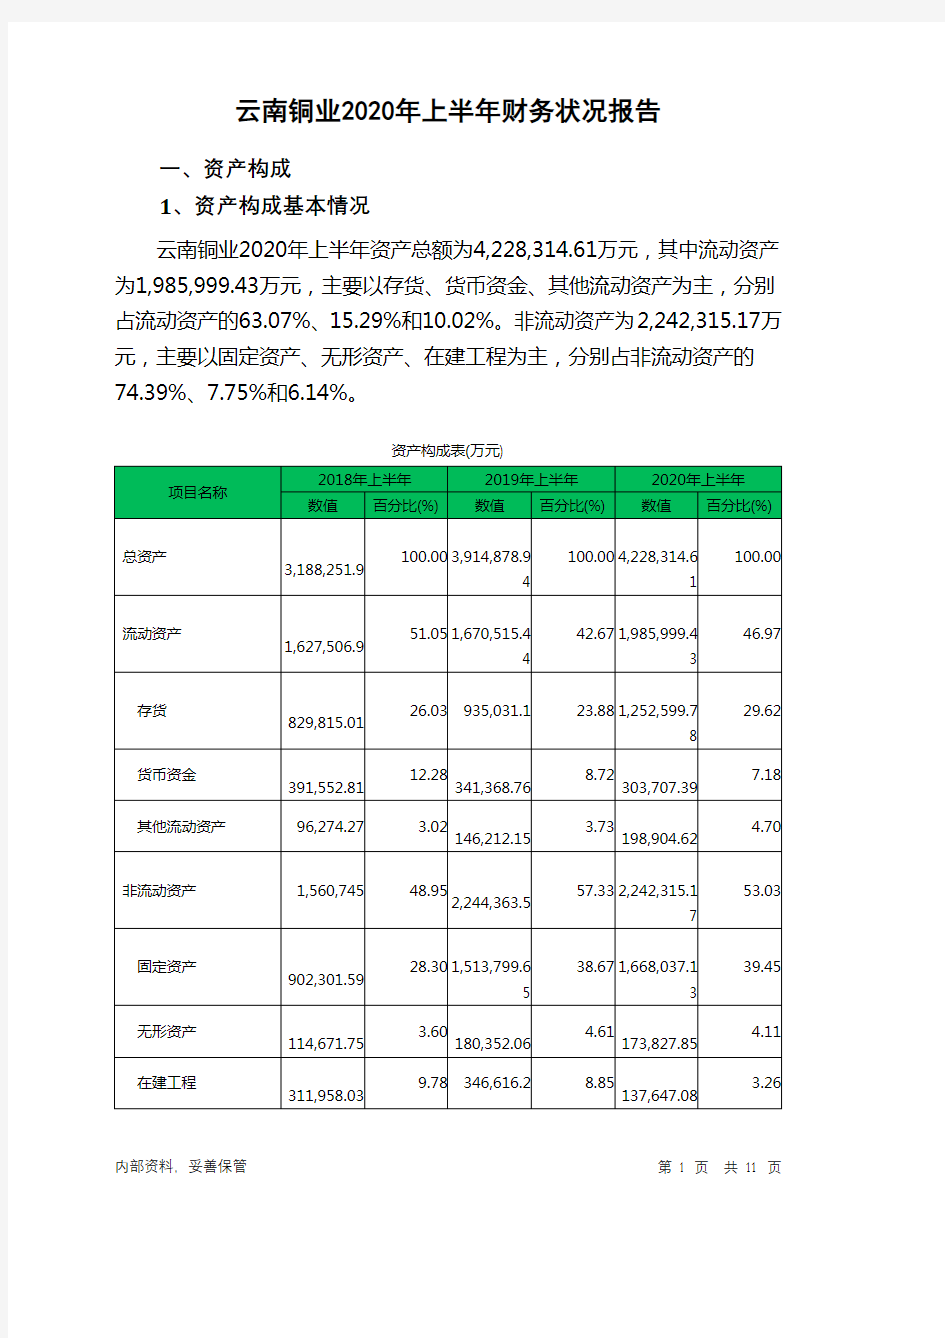 云南铜业2020年上半年财务状况报告